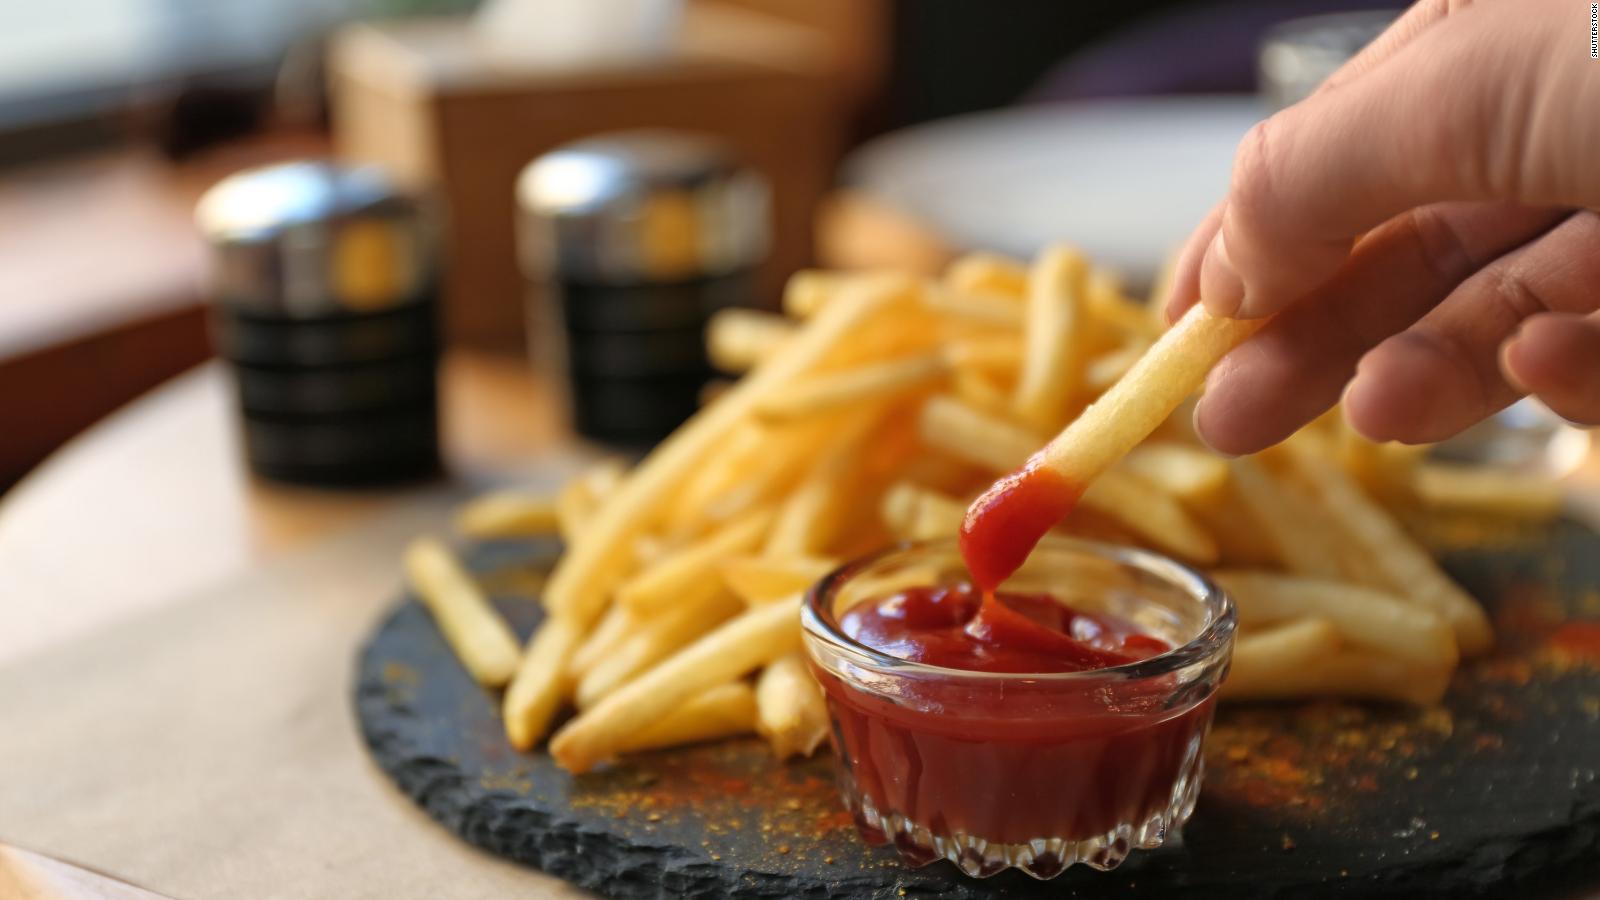 Incluso una pequeña porción de alimentos fritos puede aumentar el riesgo de enfermedades cardíacas, según el estudio.